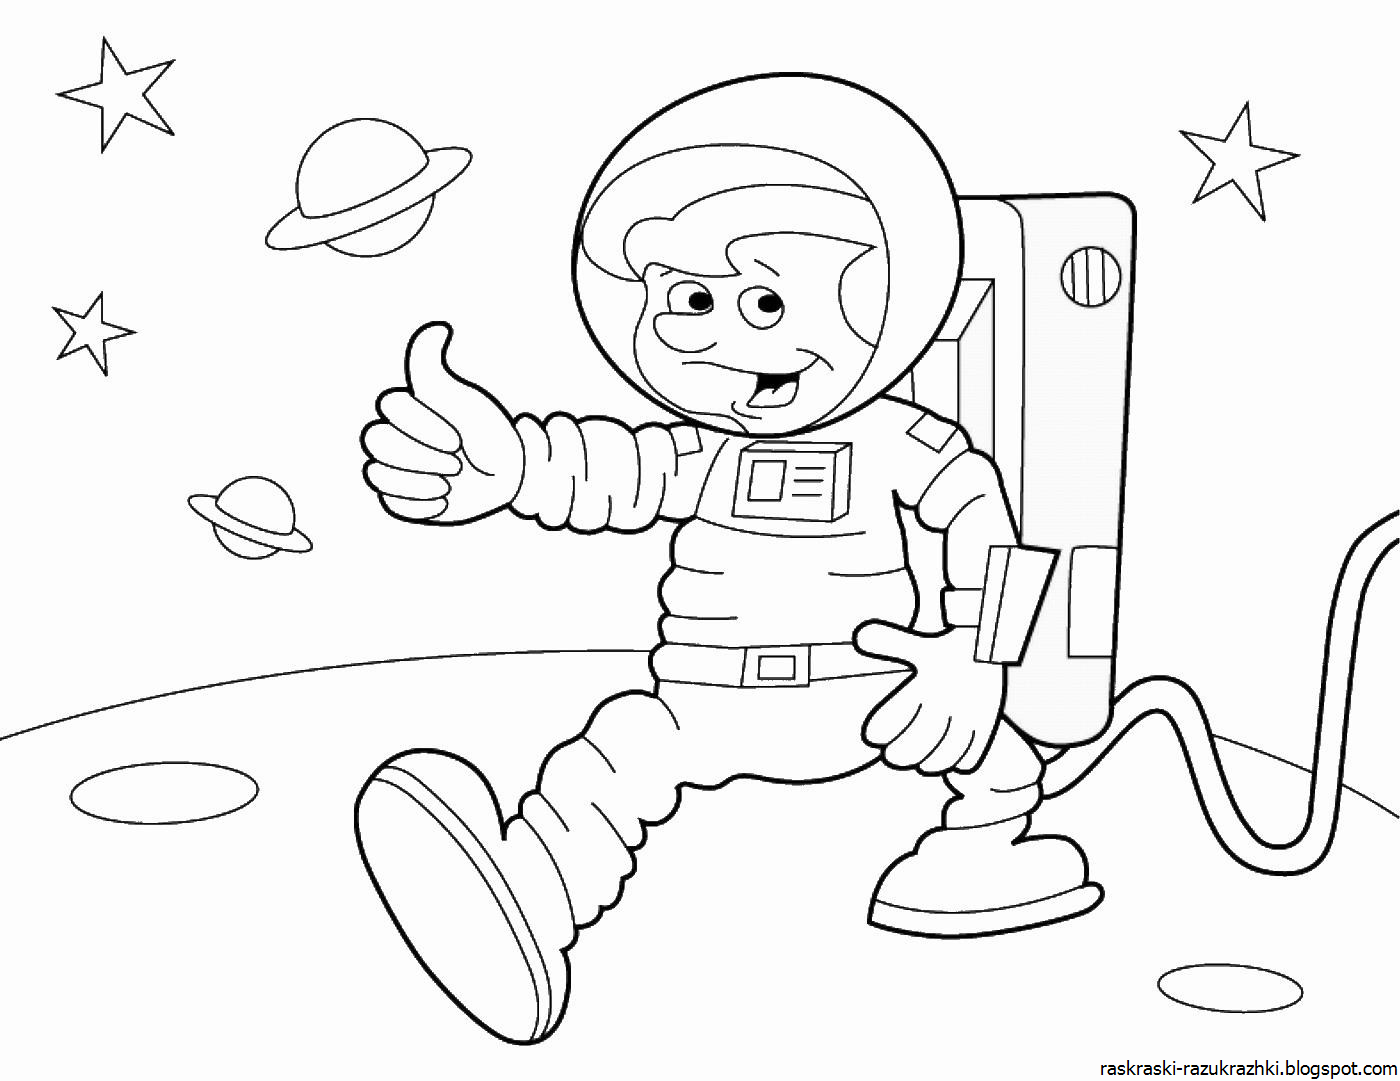 Рисунок ко дню космонавтики черно белый. Космонавт раскраска для детей. Раскраски ко Дню космонавтики. Раскраска день космонавтики для детей. Космонавтика раскраски для детей.